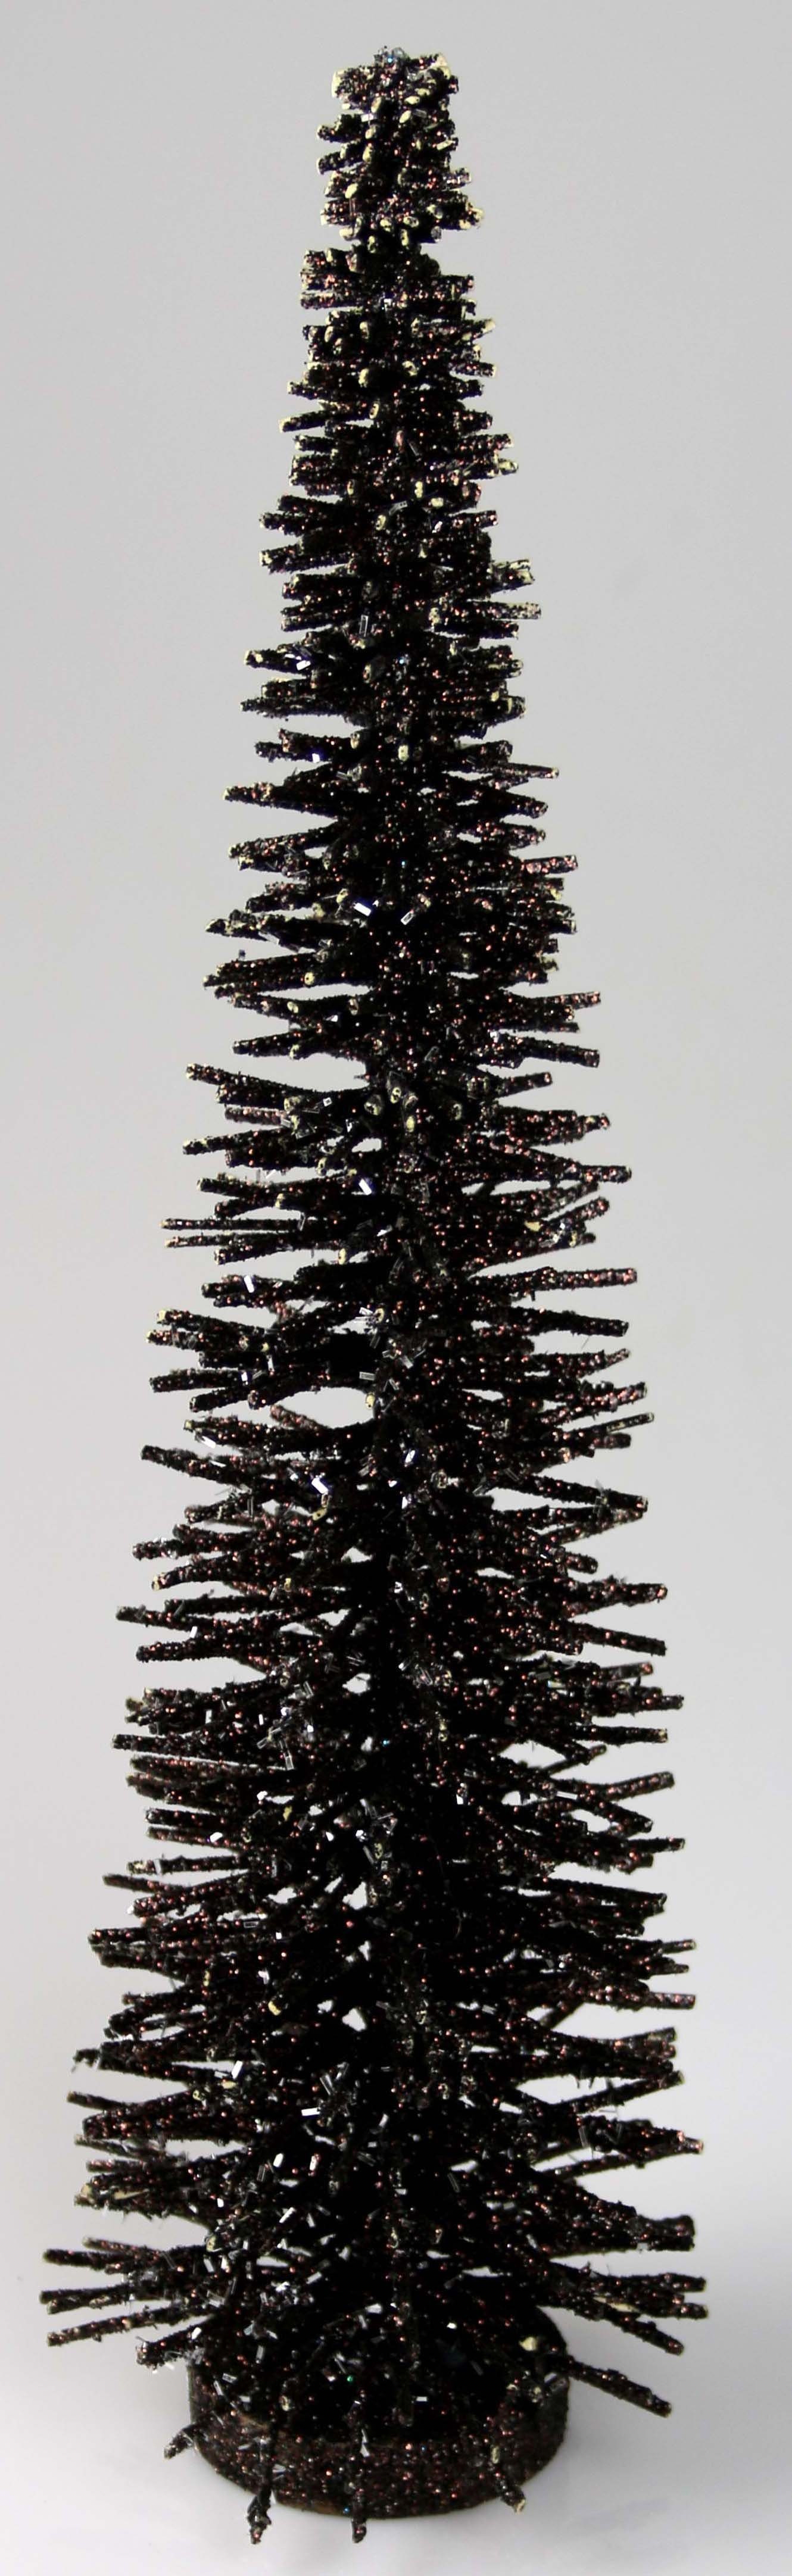 AM Design für Ideal geeignet Weihnachtsdekoration Baum, die St), Weihnachtsdeko freistehender (1 Dekobaum